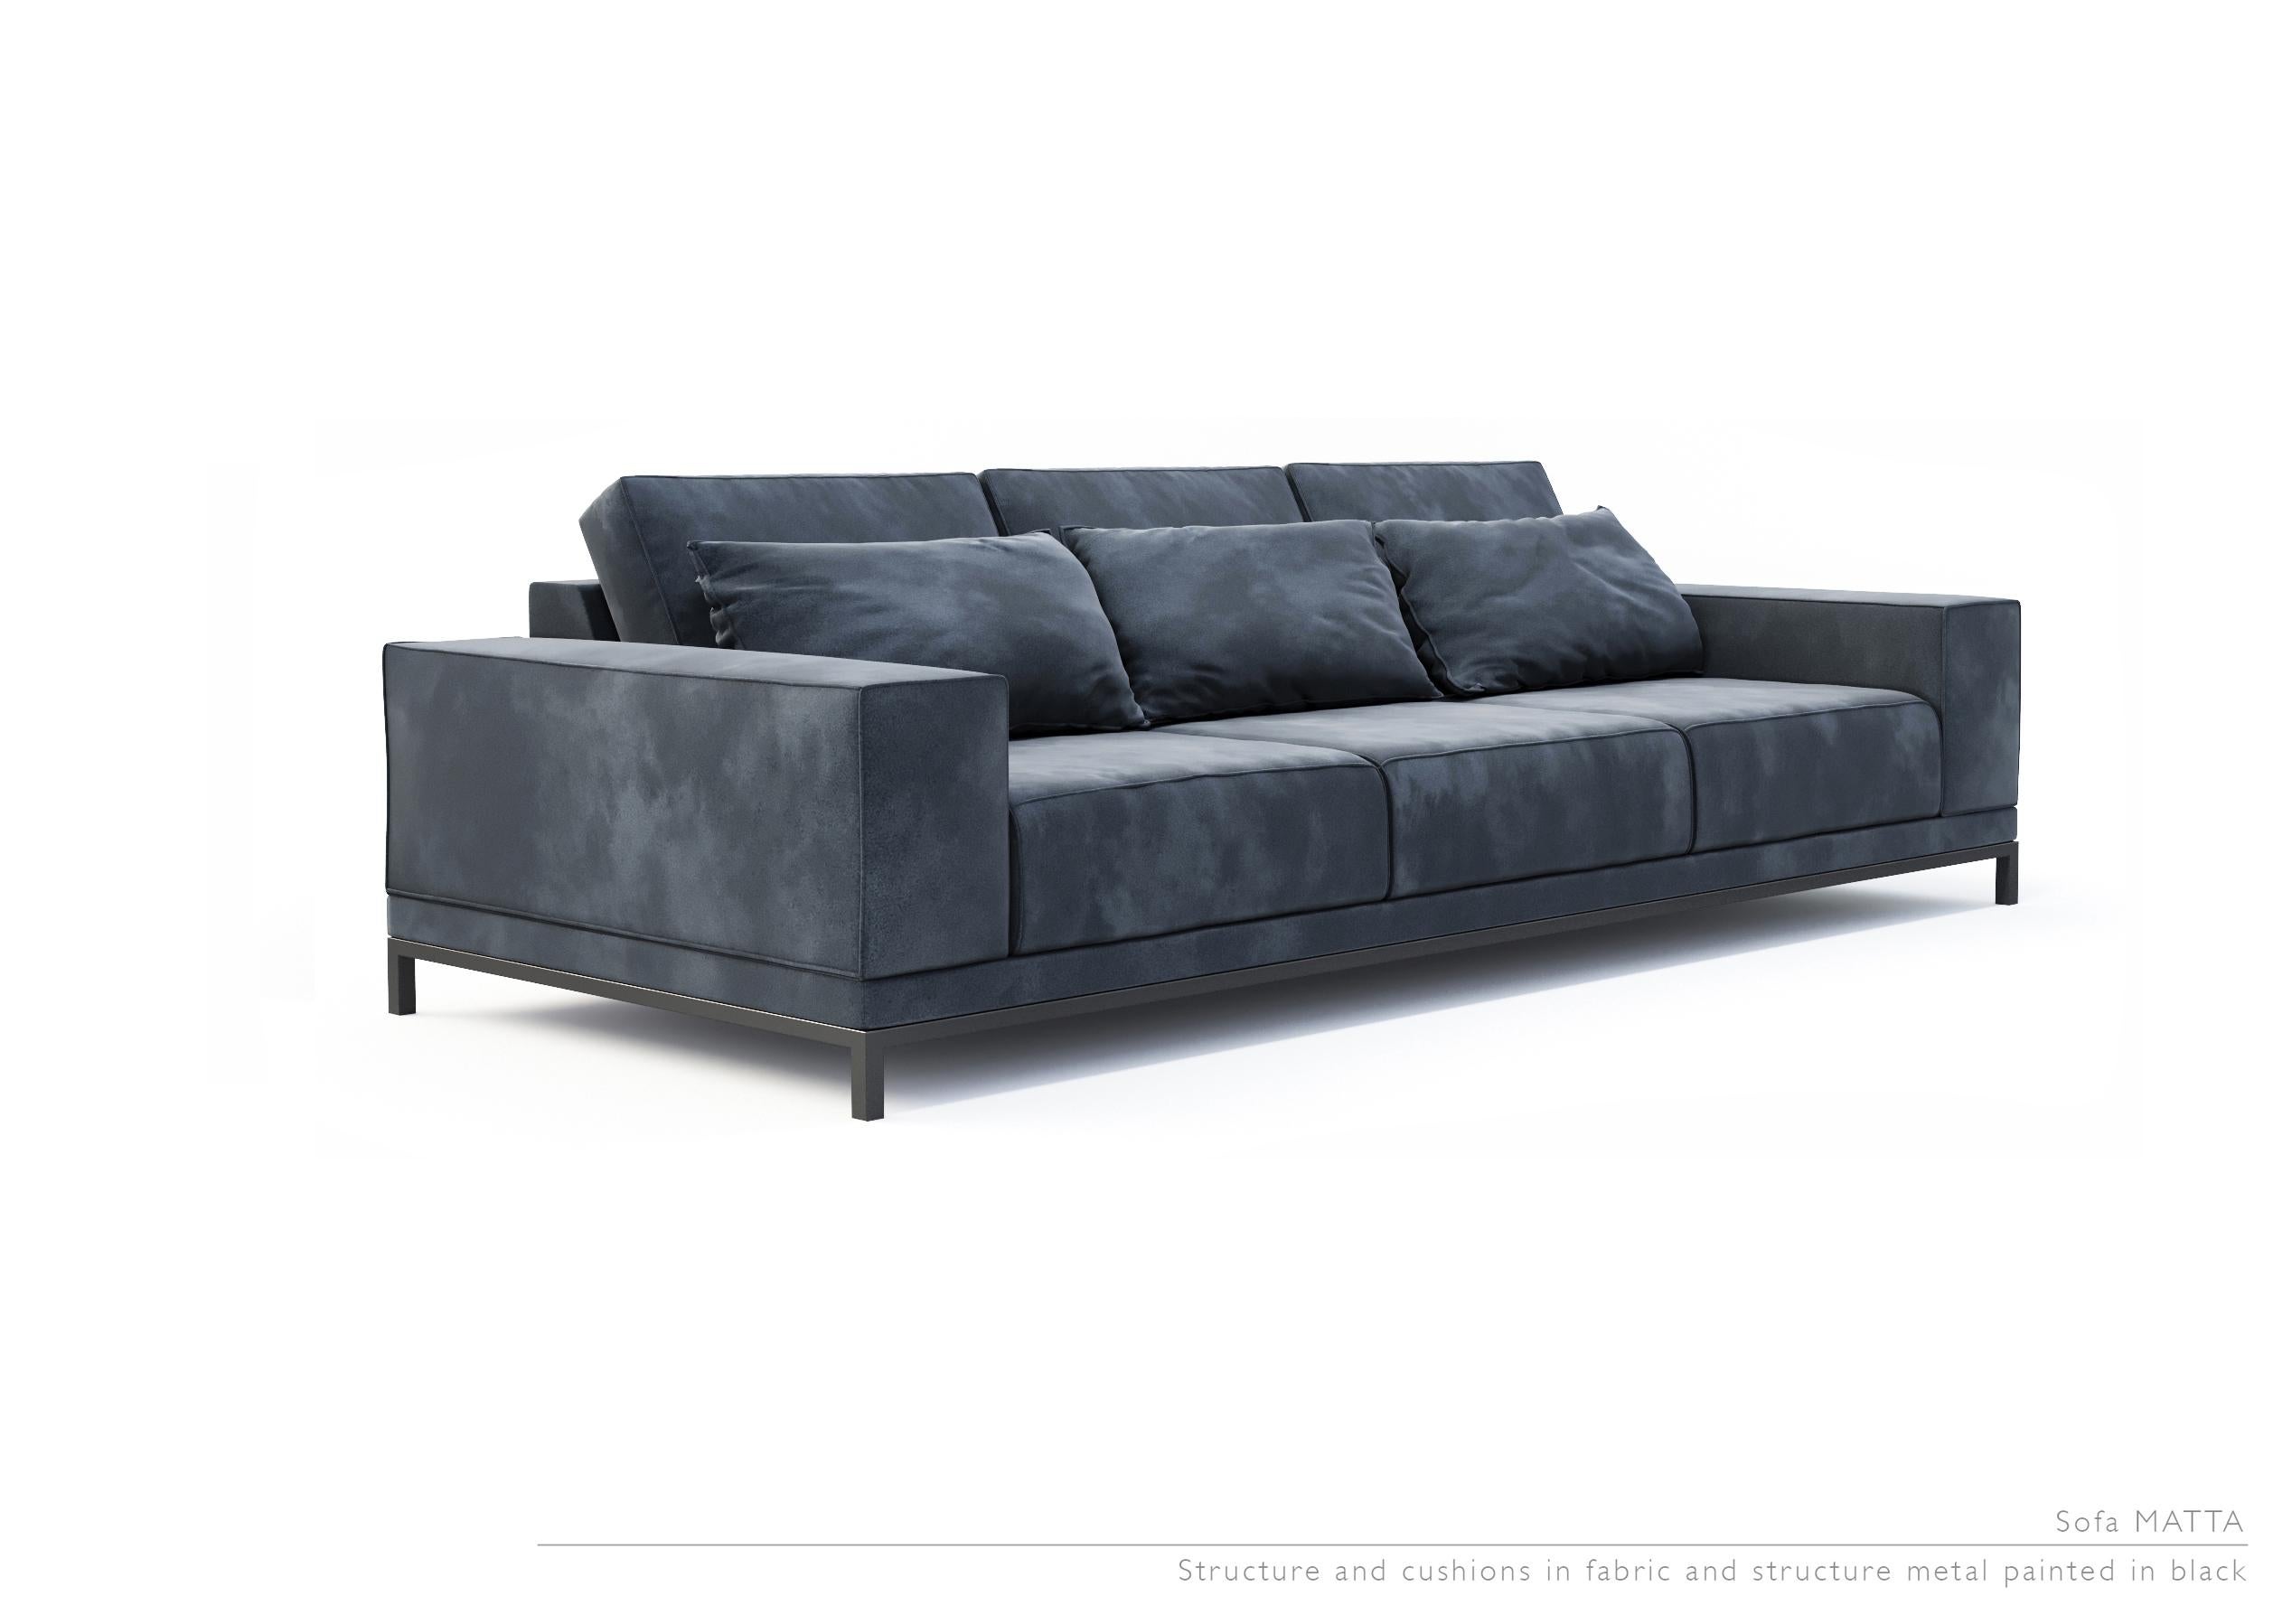 Modern Matta Sofa by LK Edition